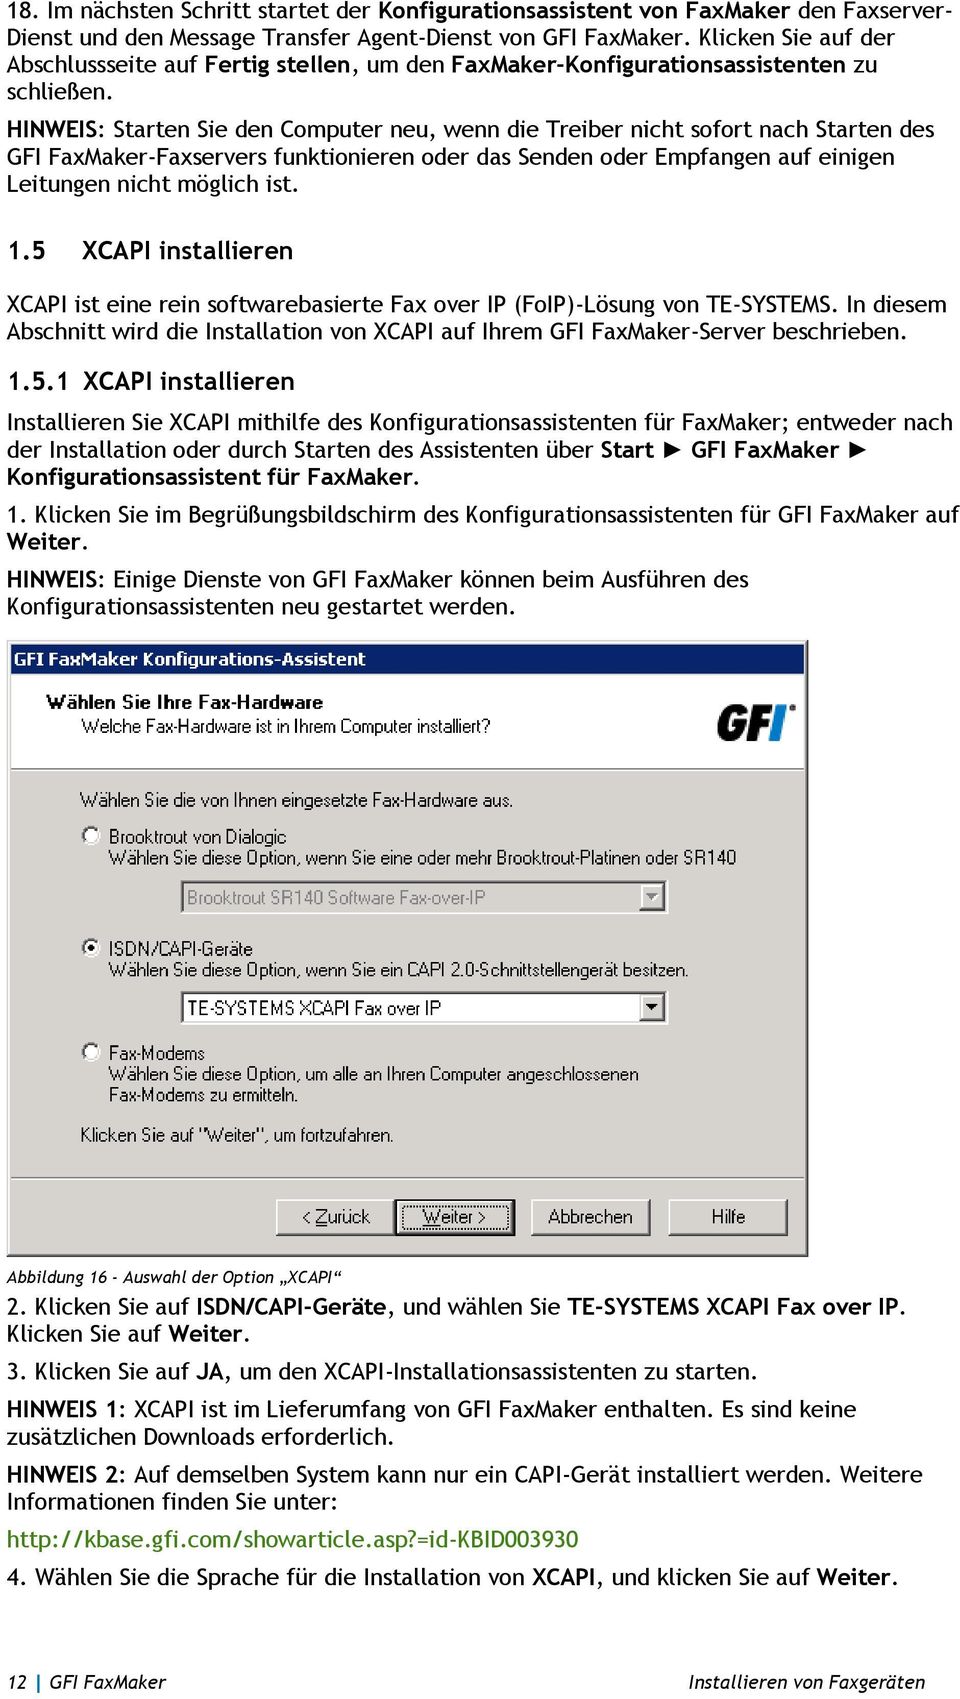 HINWEIS: Starten Sie den Computer neu, wenn die Treiber nicht sofort nach Starten des GFI FaxMaker-Faxservers funktionieren oder das Senden oder Empfangen auf einigen Leitungen nicht möglich ist. 1.